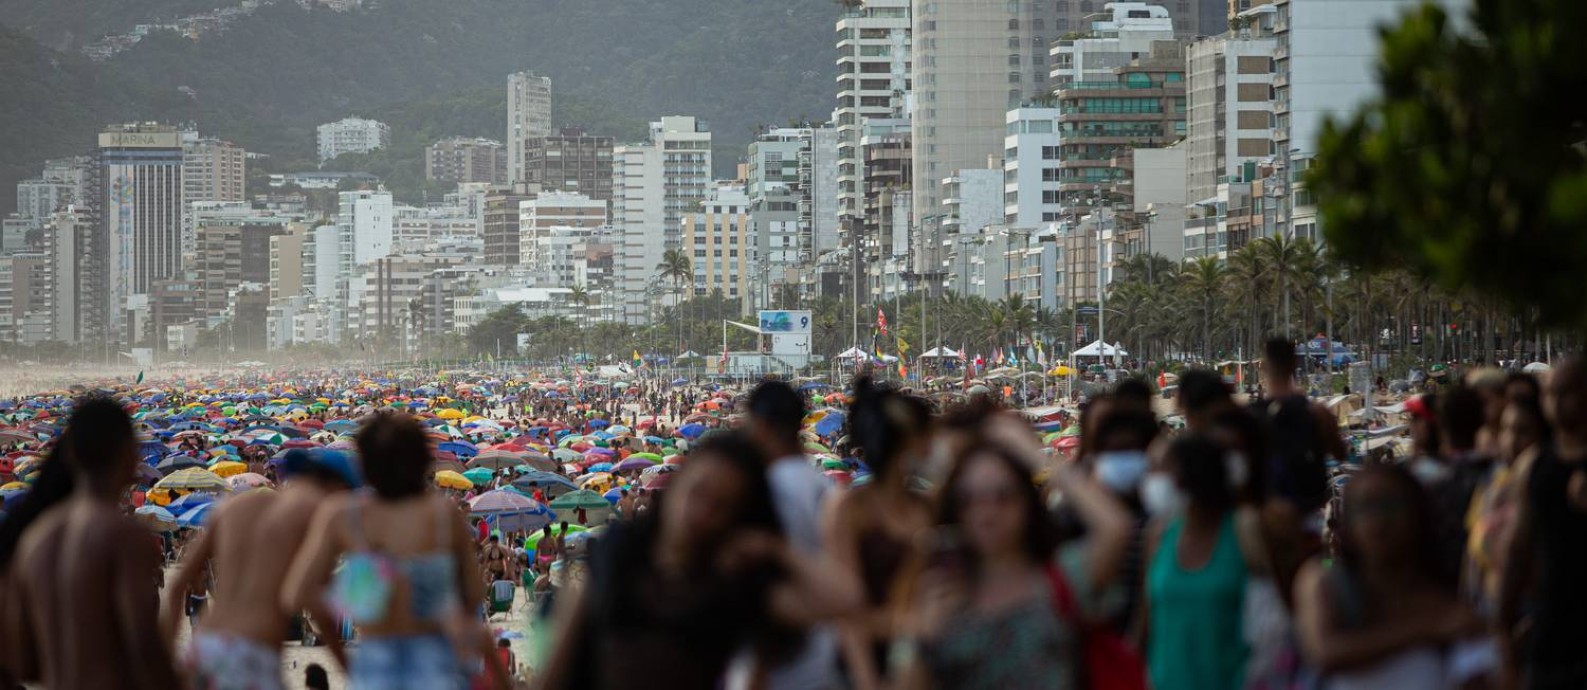 Aglomeração na praia de Ipanema, na Zona Sul, na última segunda-feira (30); estado do Rio tem mortalidade por Covid-19 mais alta do país Foto: Hermes de Paula / Agência O Globo